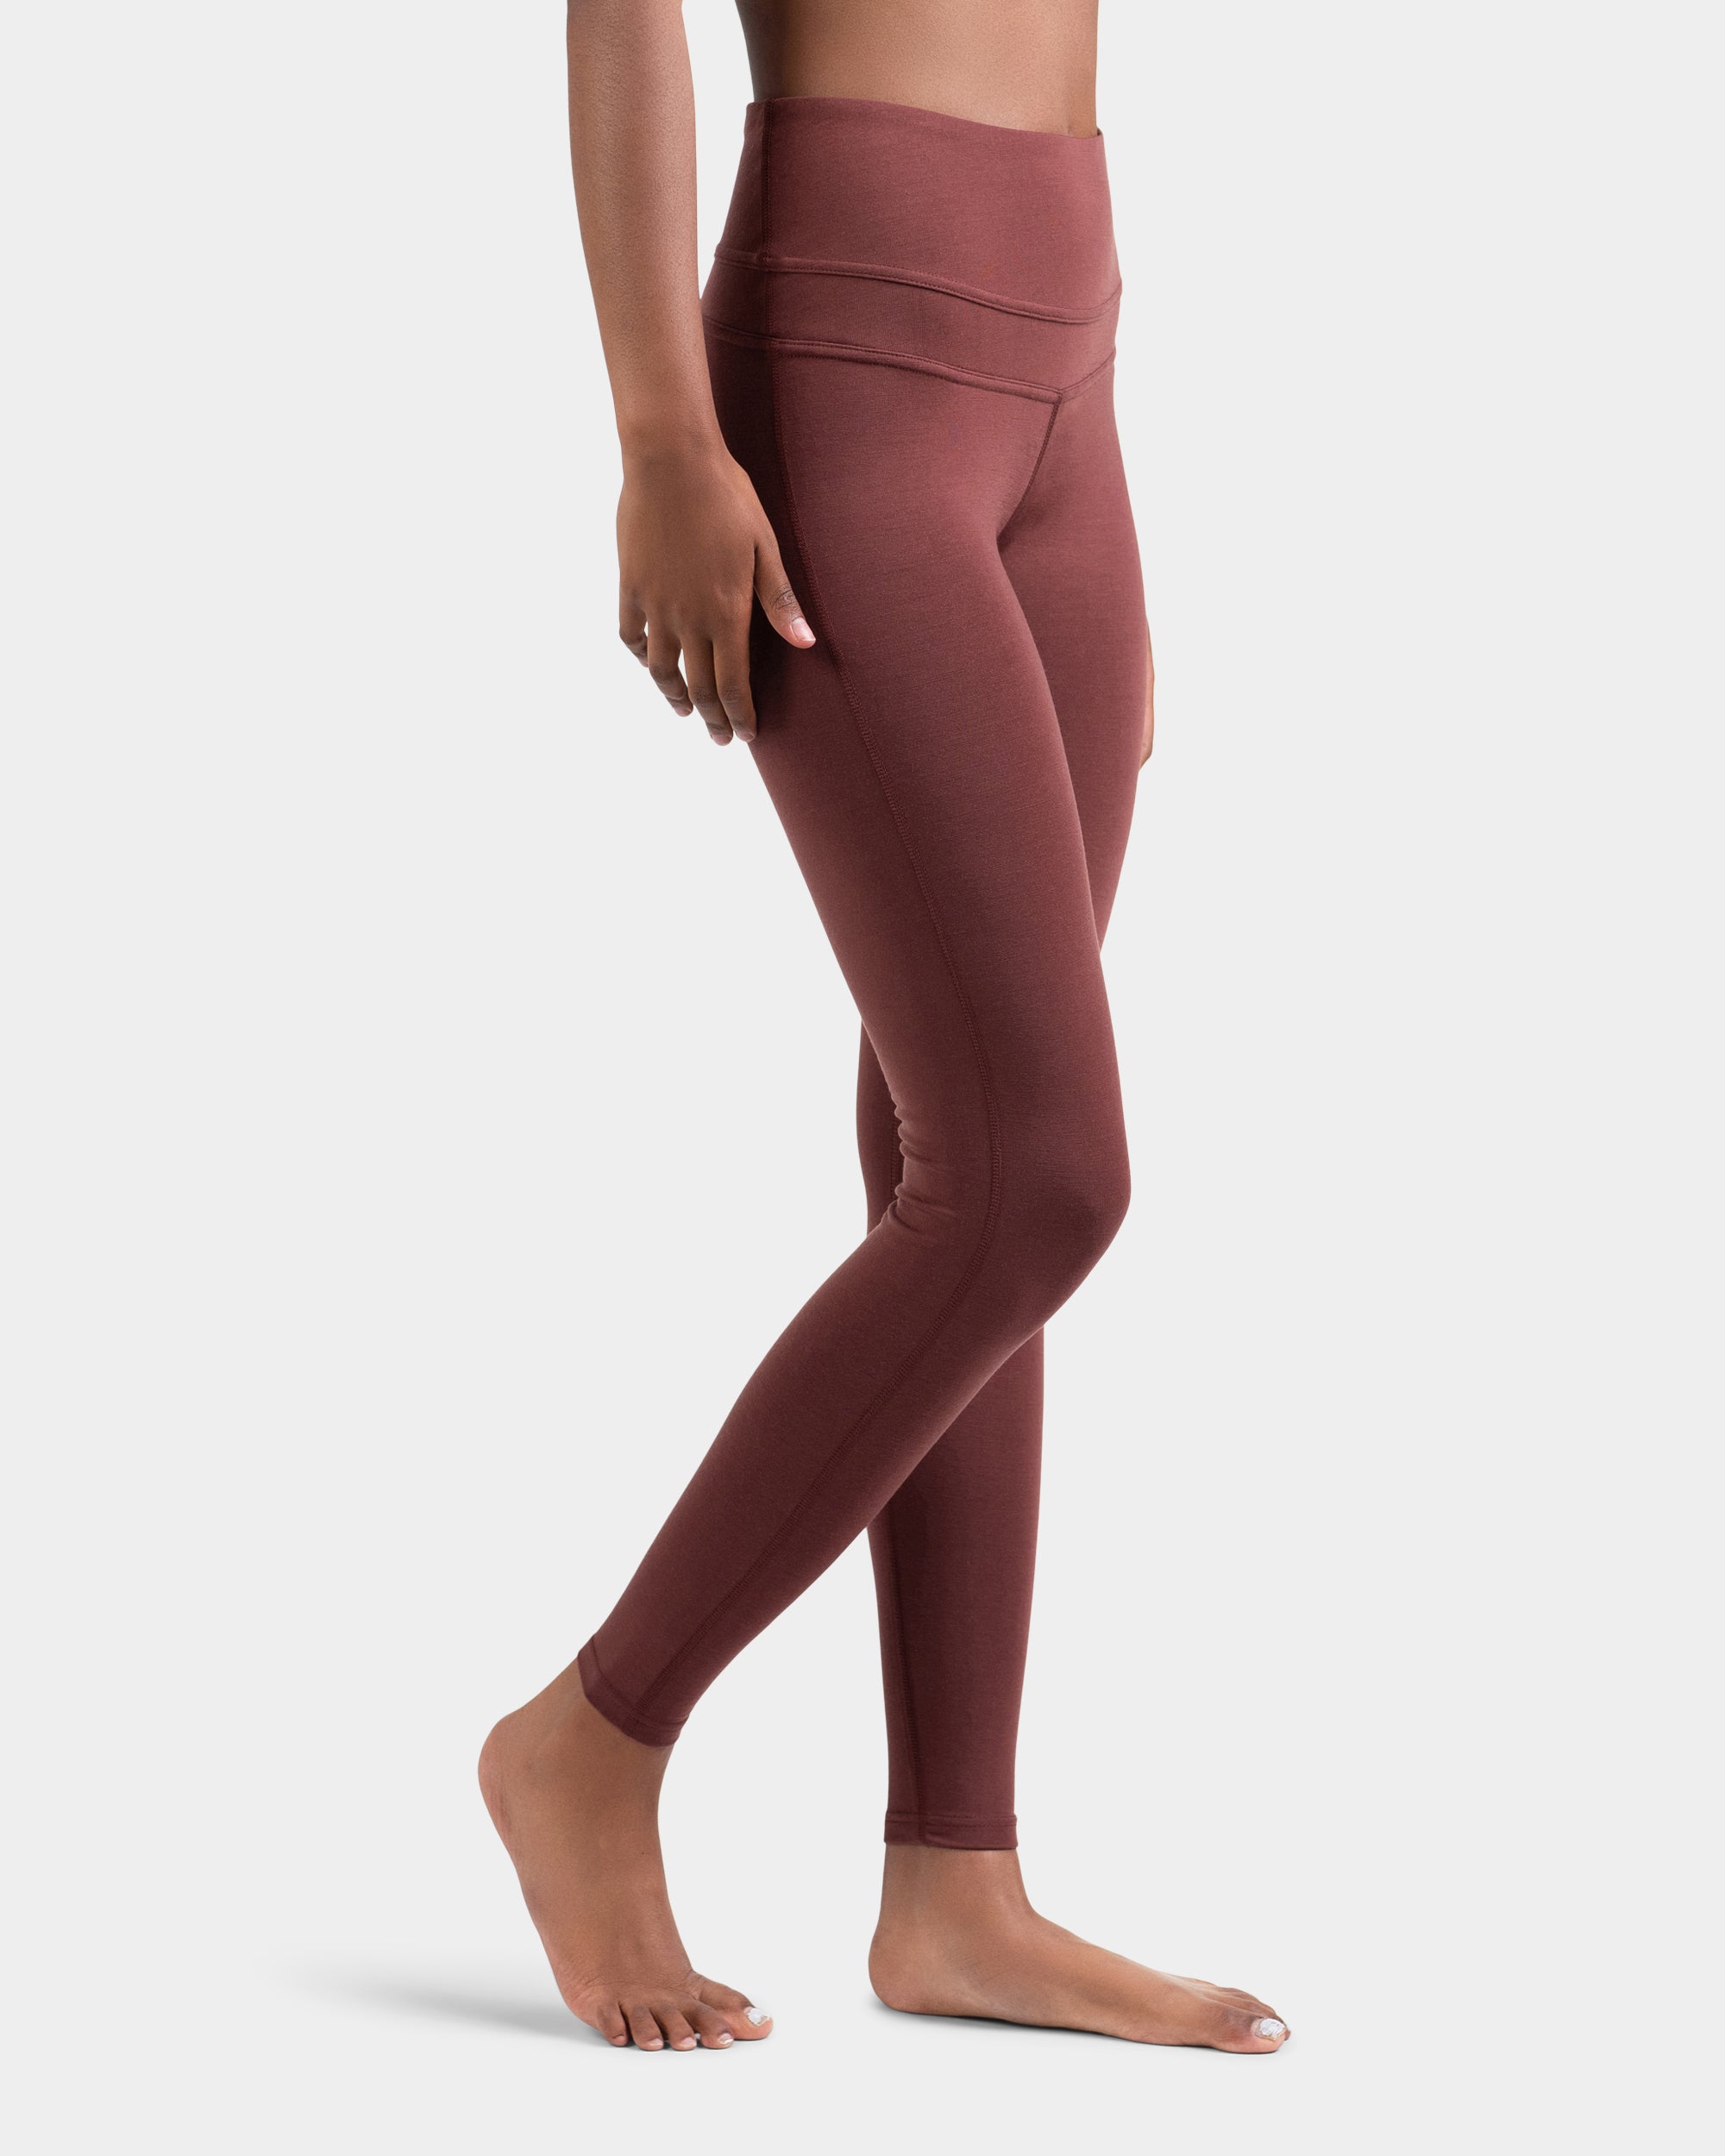 Lululemon Women's Align High-Rise Pant Leggings 31 Red Merlot Size 6